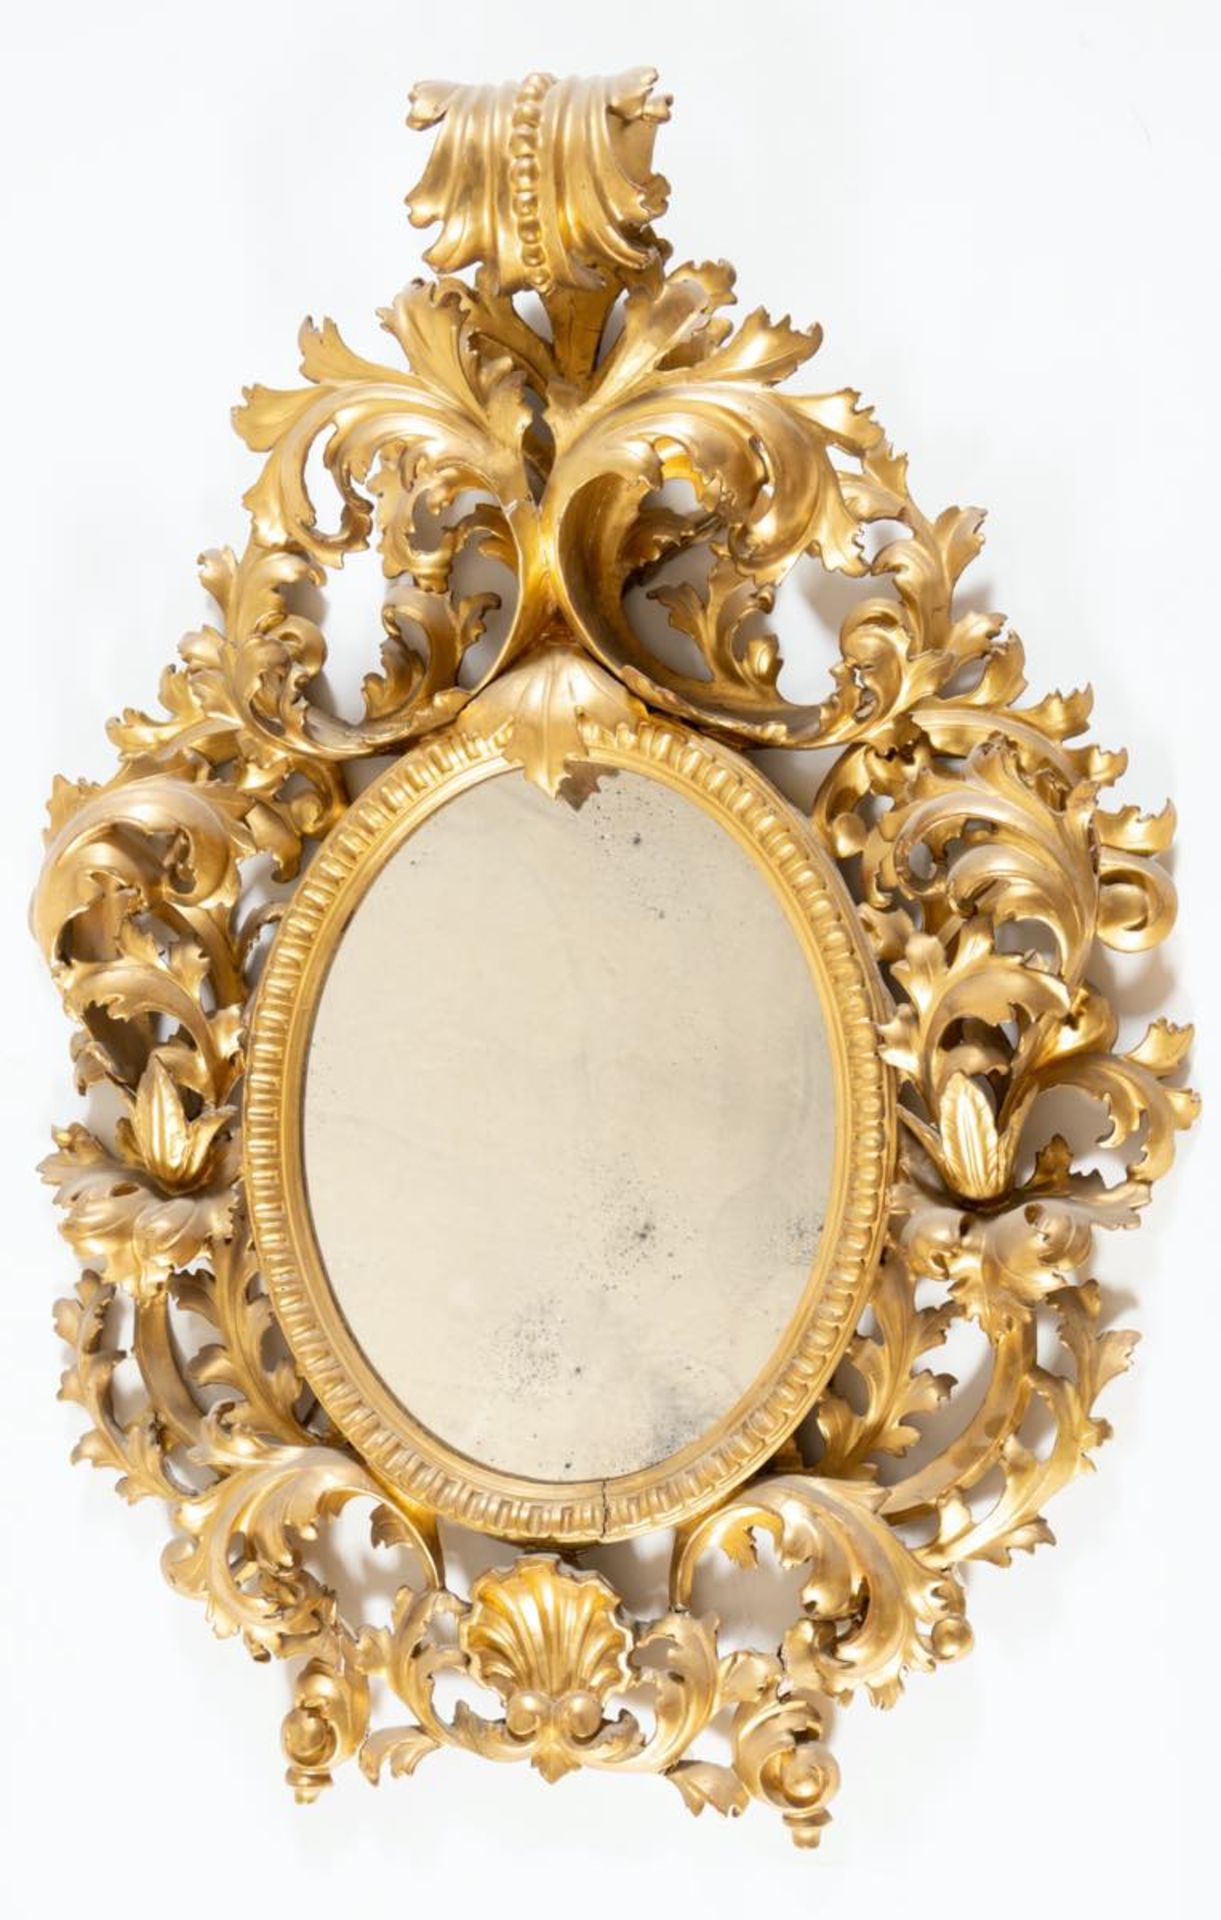 Specchiera in legno intagliato e dorato, Firenze, fine del XIX-inizi del XX secolo.Cornice